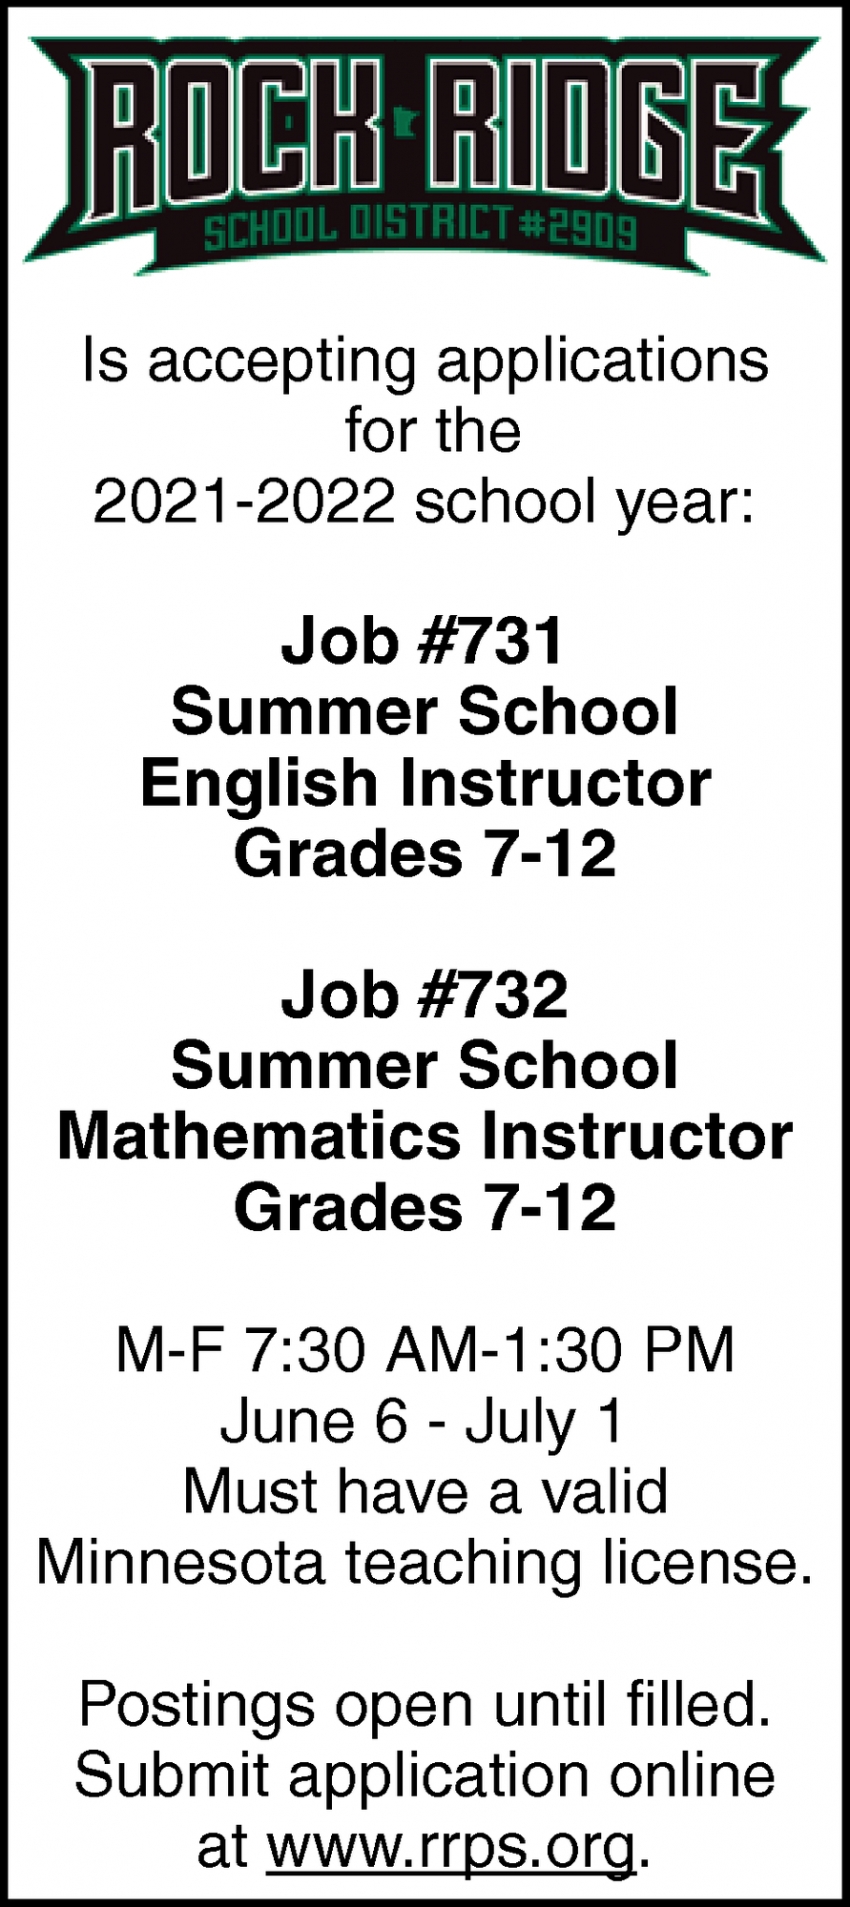 Summer School English Instructor Grades 7-12, Summer School Mathematics Instructor Grades 7-12